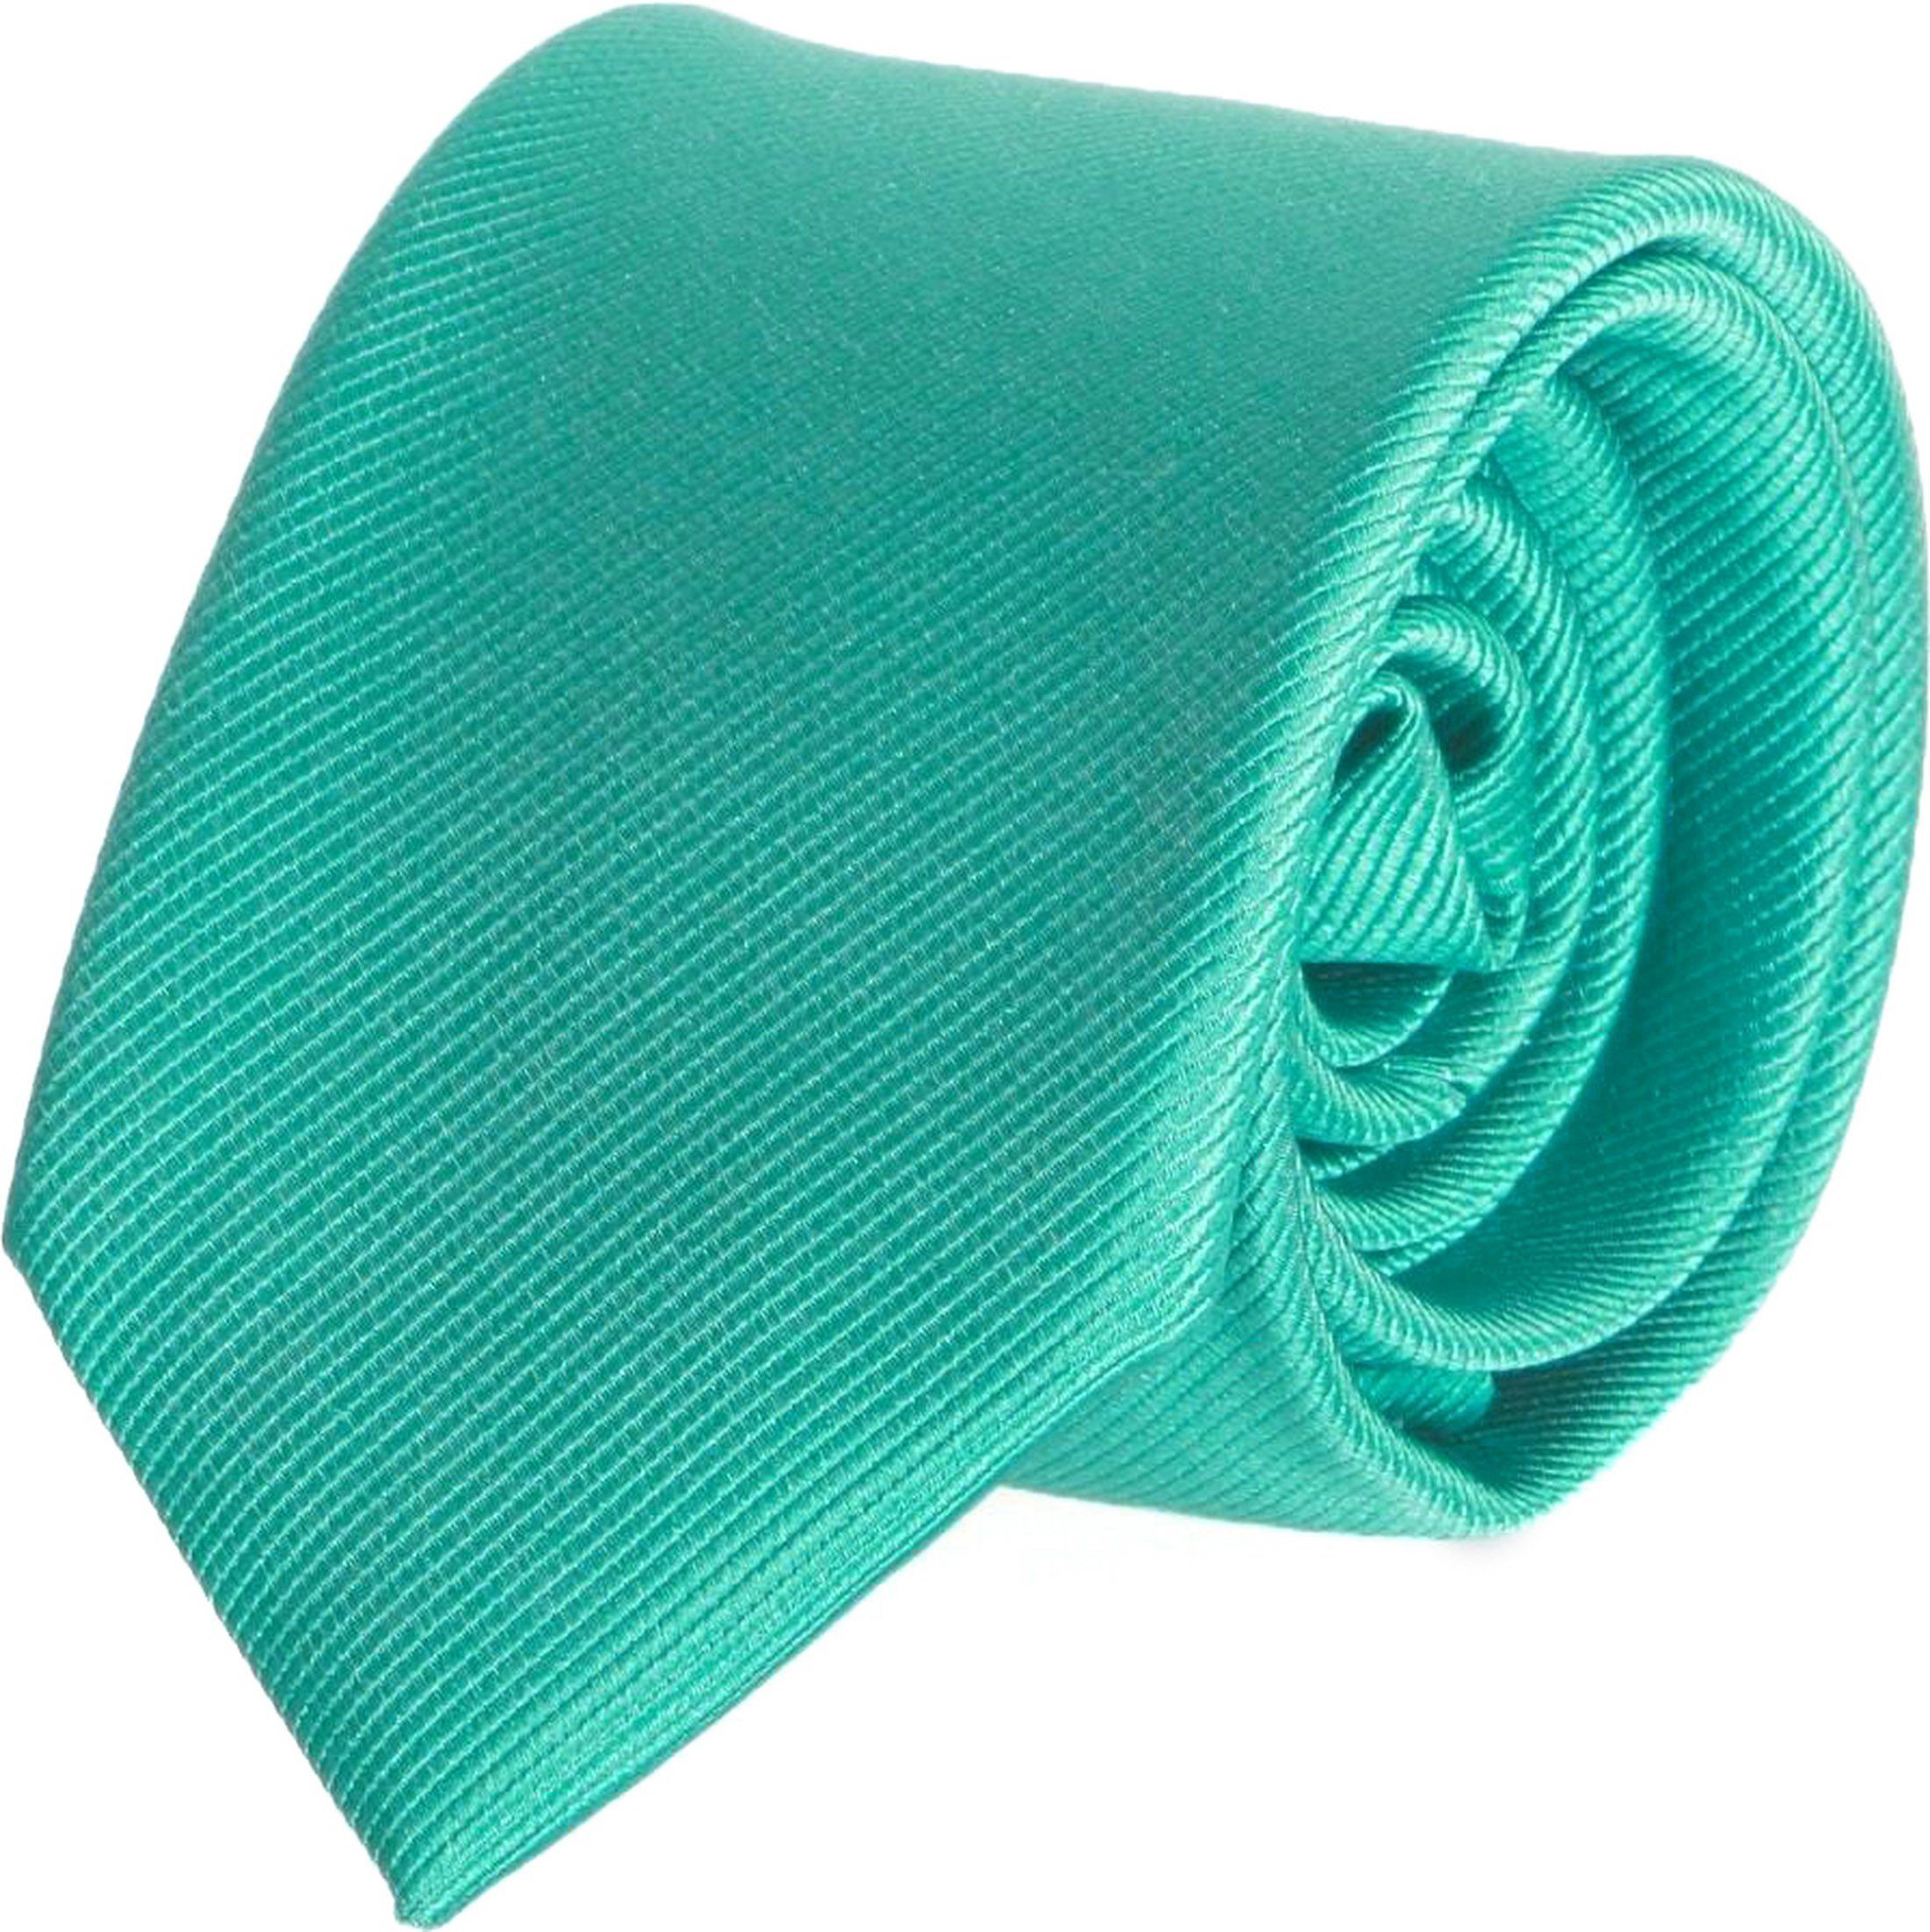 Cravate Emeraude Uni F67 Turquoise